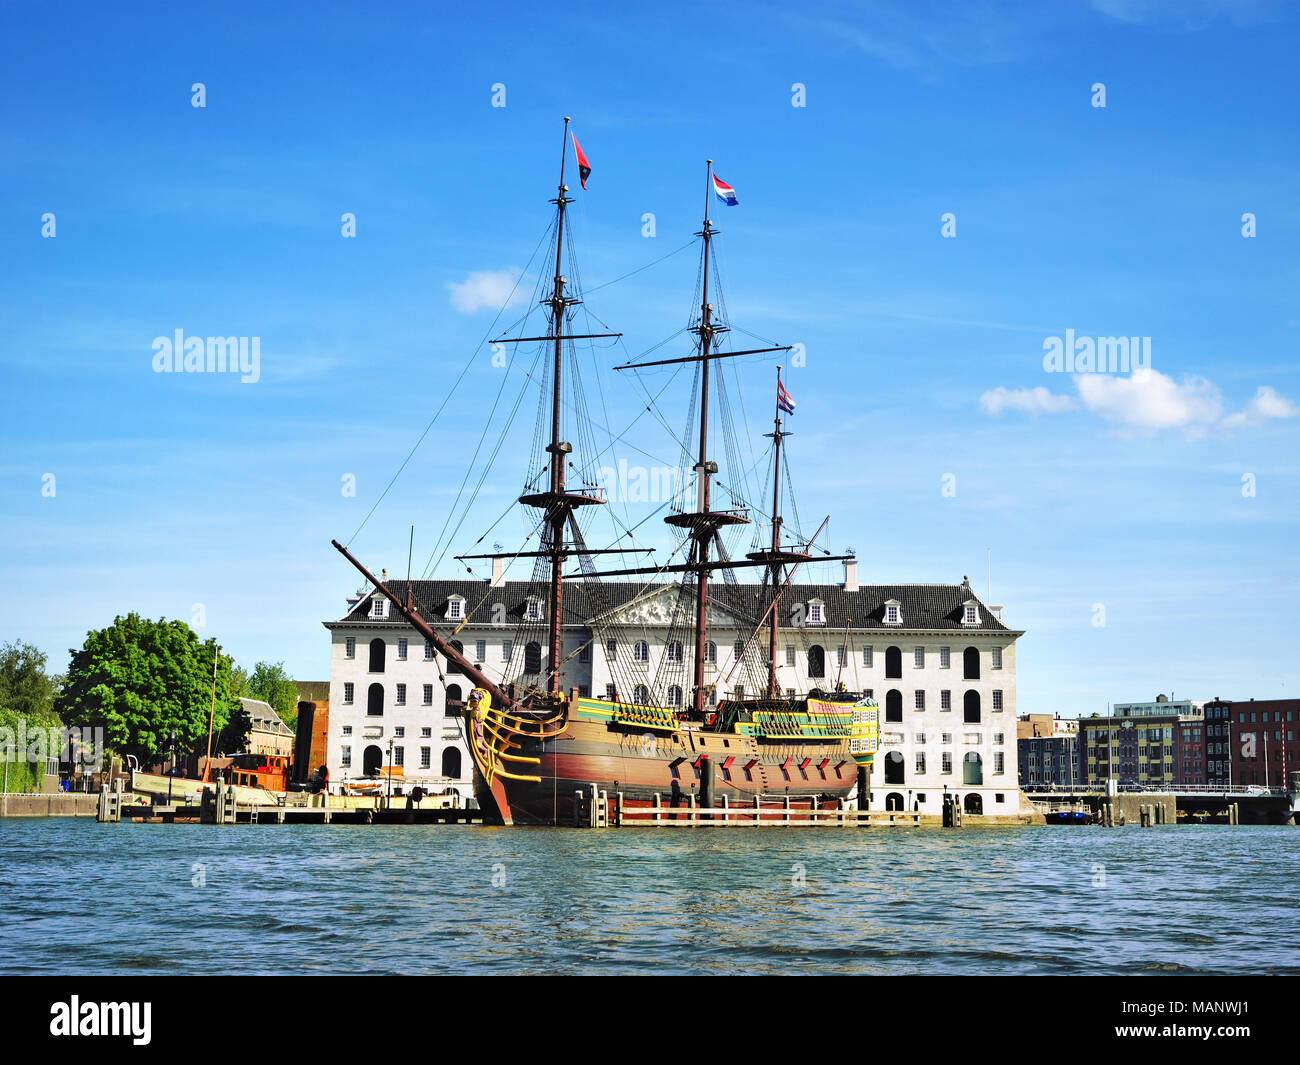 Piratenschiff oder Schiffs vor einem historischen Gebäude in Amsterdam. Sehenswürdigkeiten Attraktion, antiken Schiff. Stockfoto